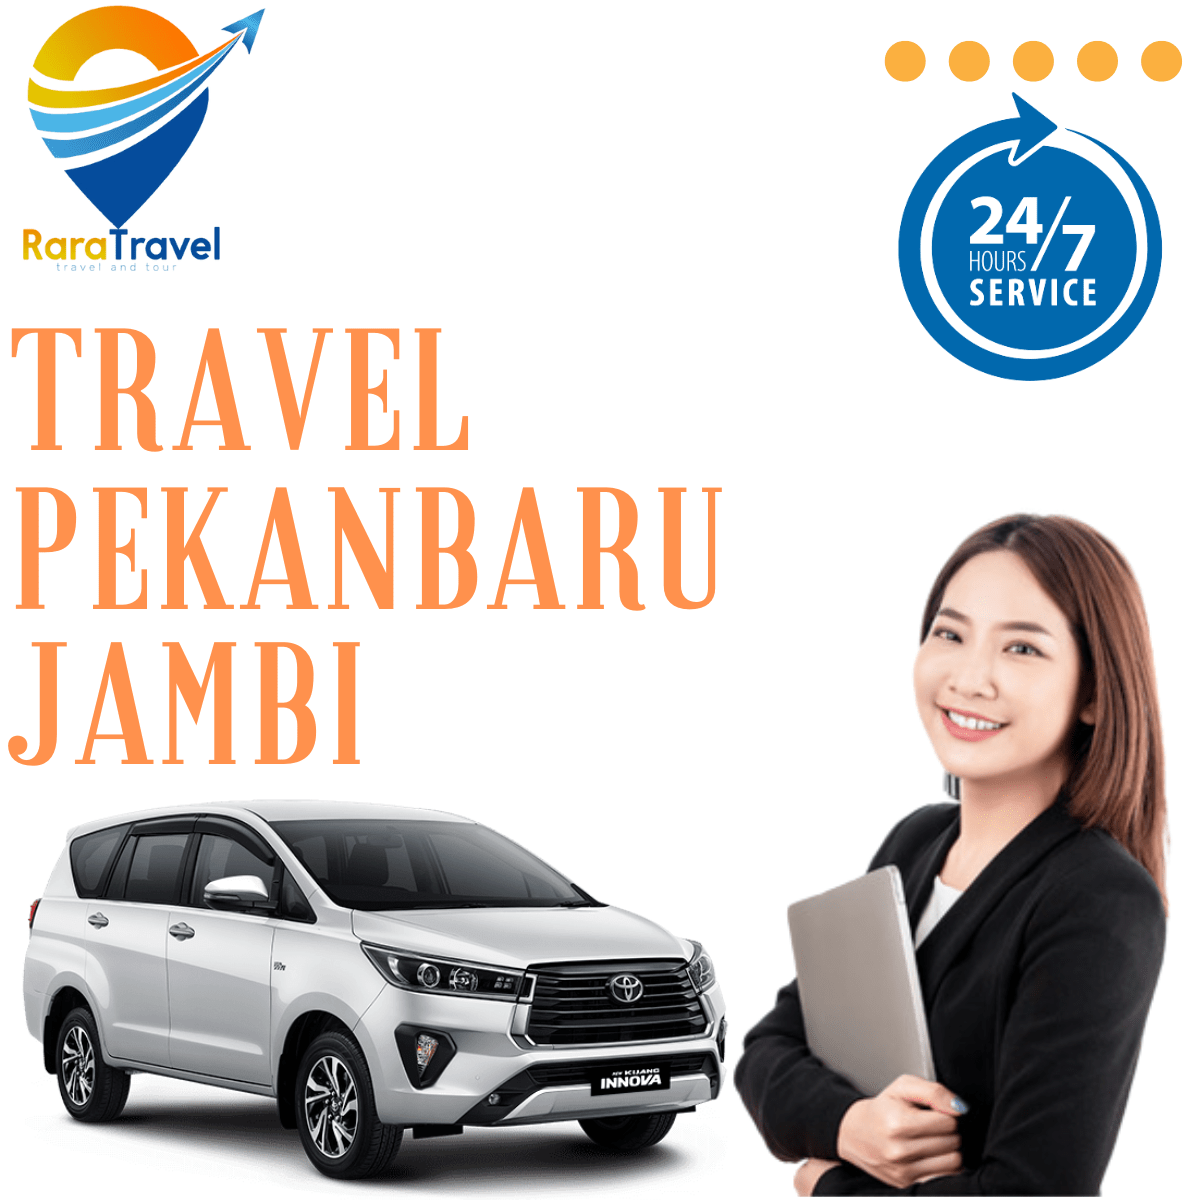 Travel Pekanbaru Jambi Hiace Harga Tiket Murah - RARATRAVEL.ID